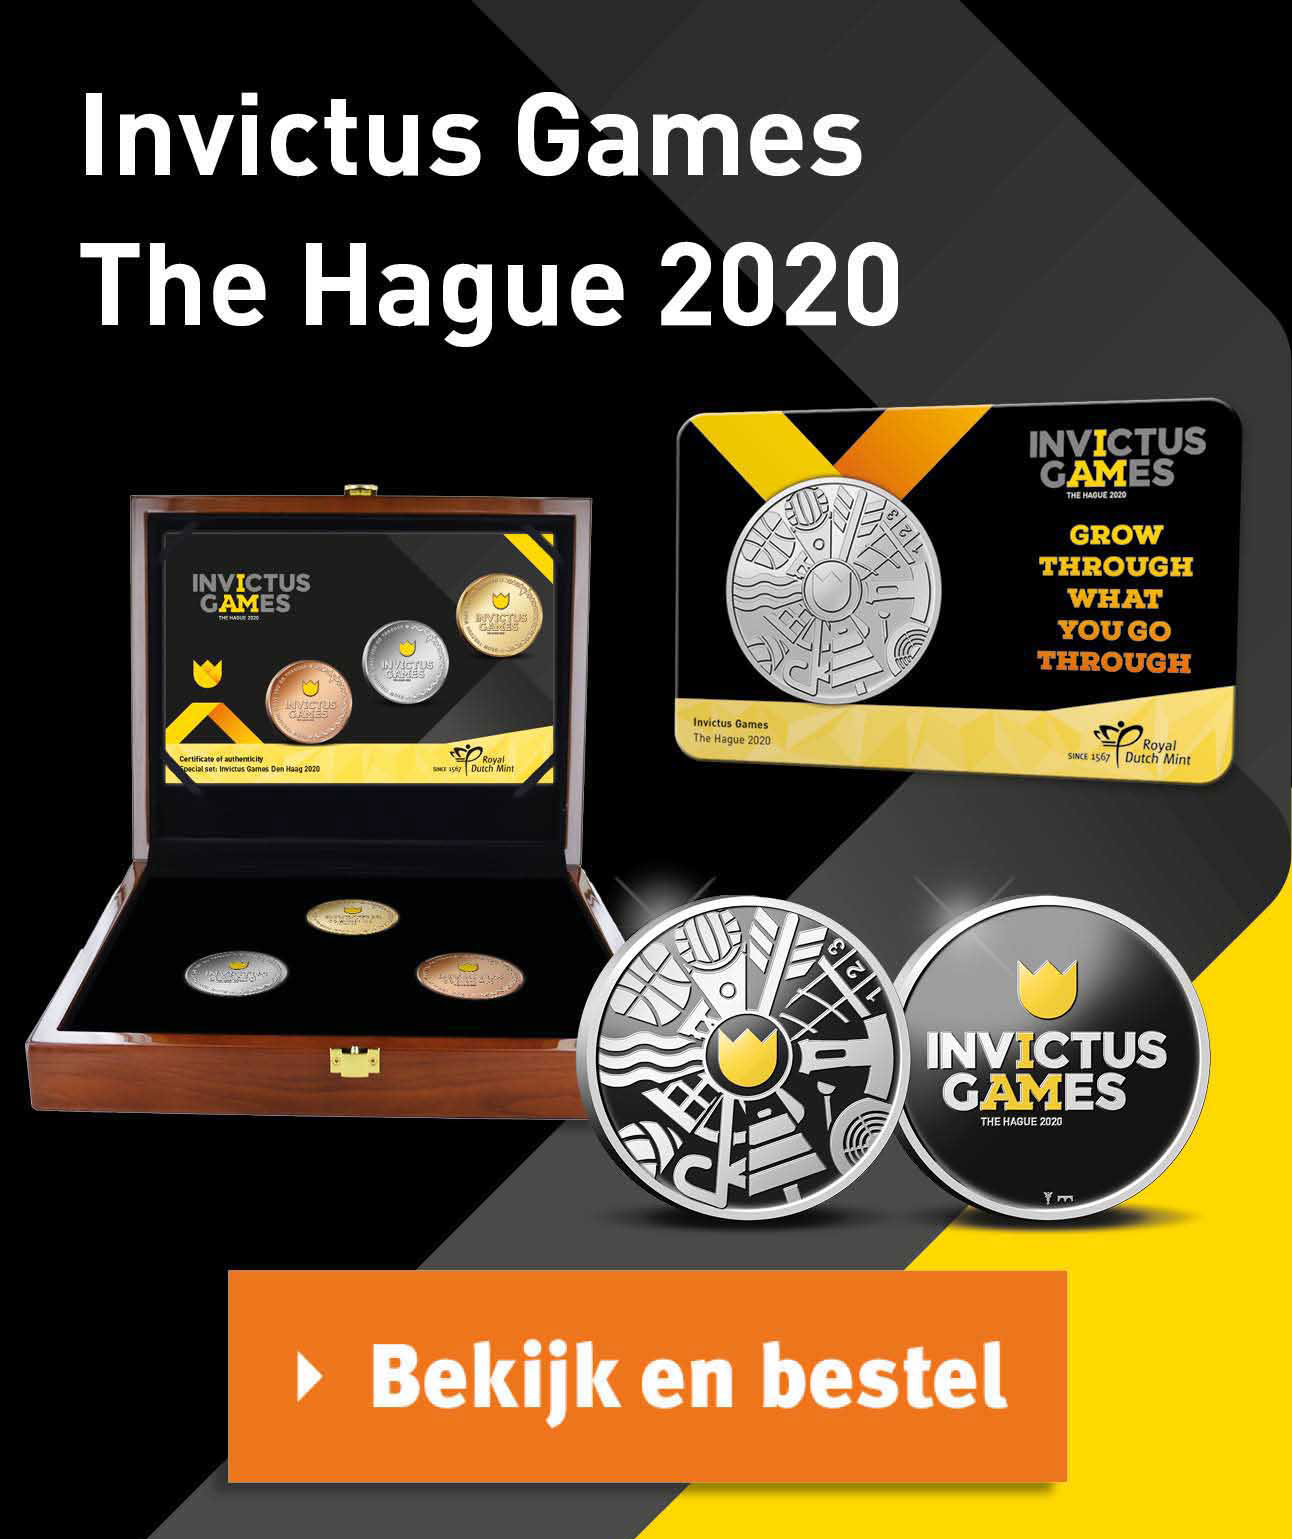 Bekijk en bestel: Invictus Games coincard